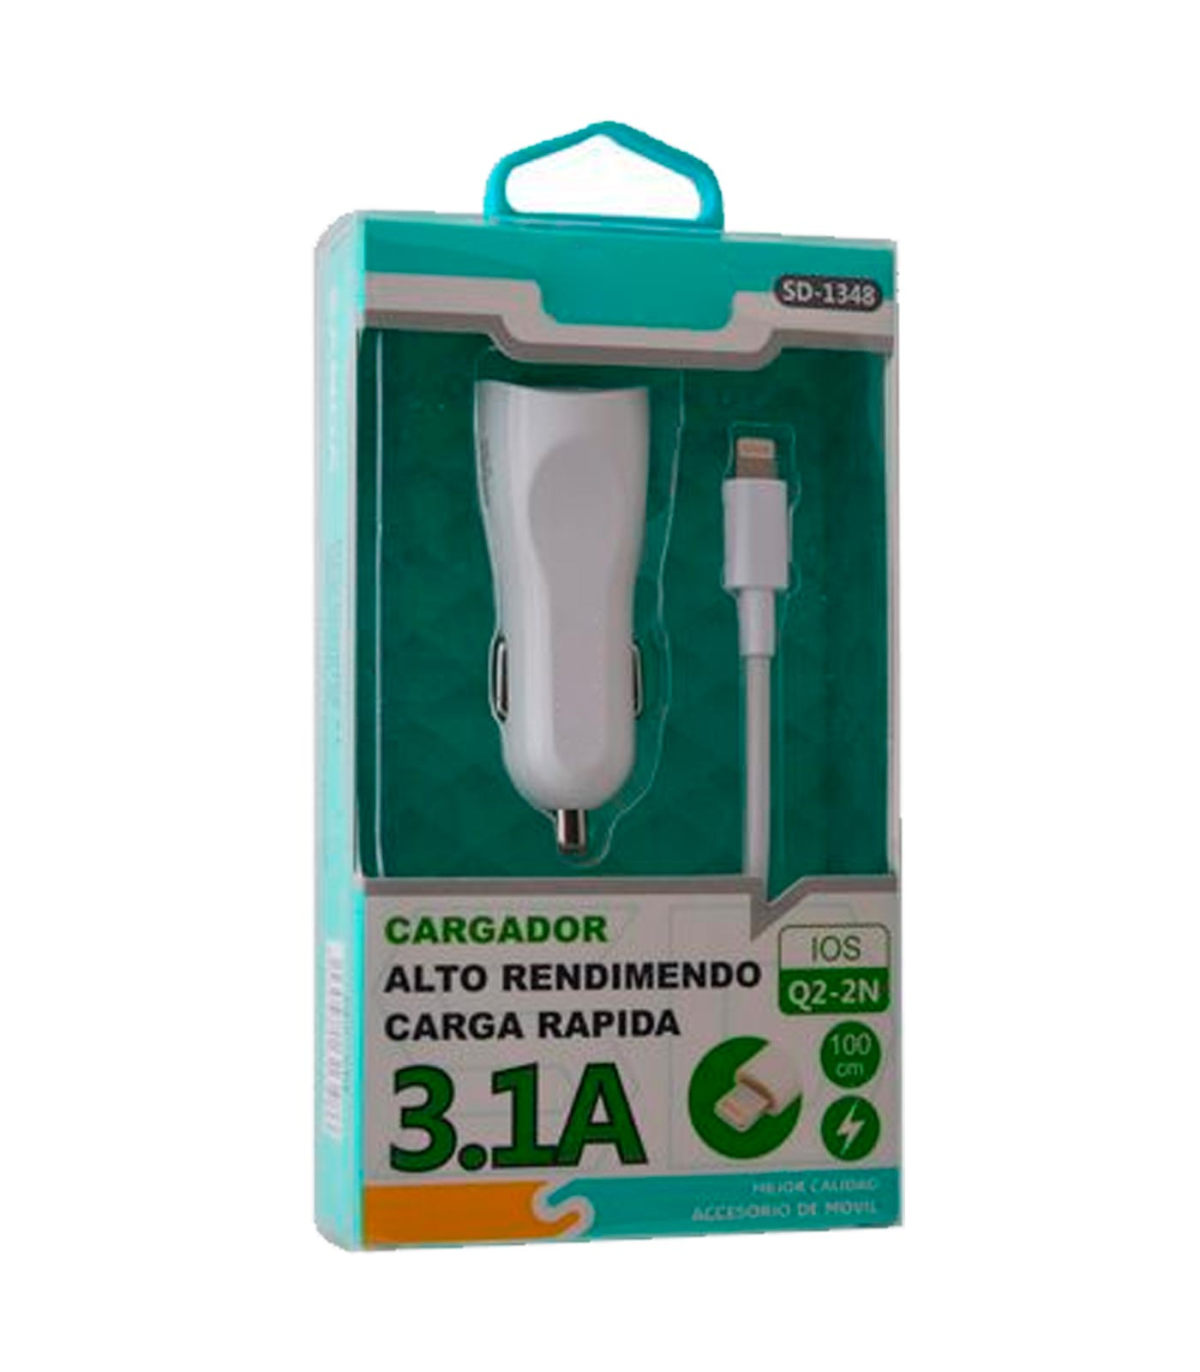 Tradineur - Cargador para móviles - Cable USB Tipo-C - Alto rendimiento /  Carga rápida - 1 Puertos USB - Color Blanco